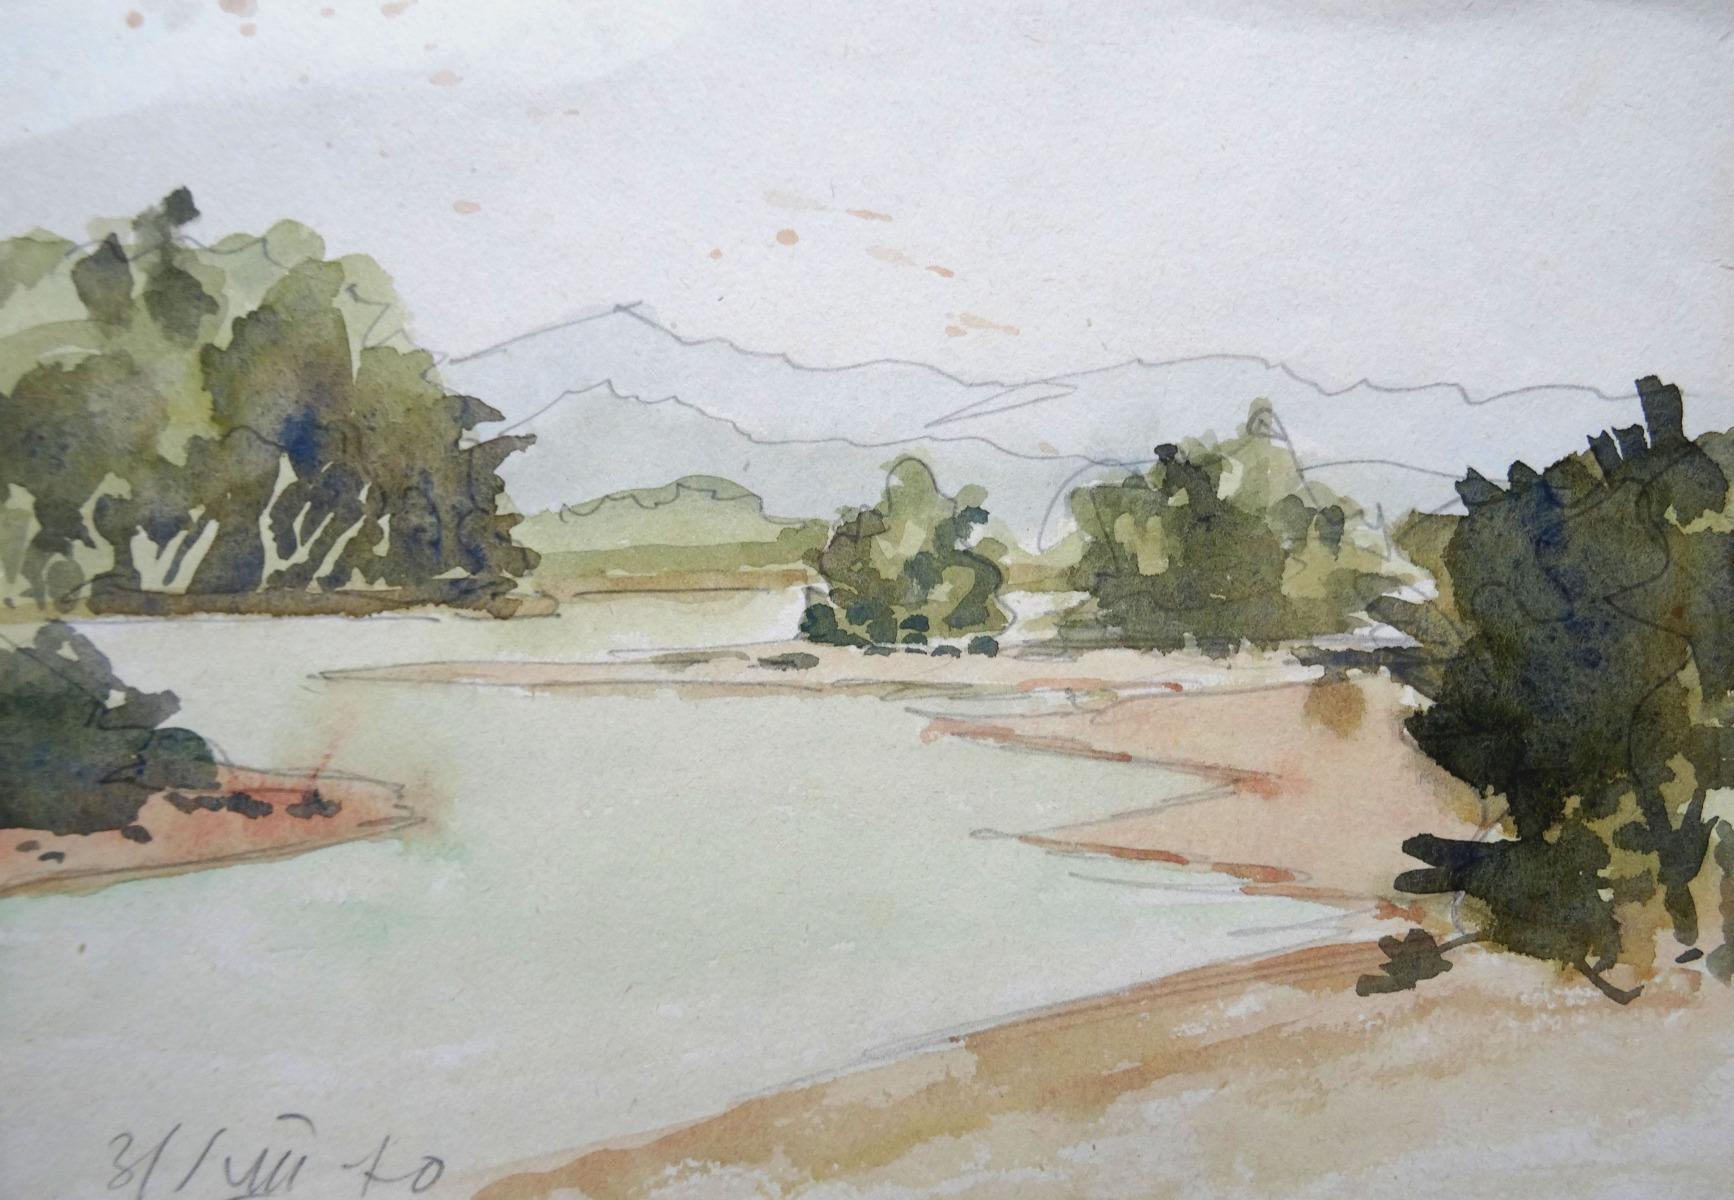 Herberts Mangolds Landscape Painting - River  1970, paper/watercolor/pencil, 14x20 cm